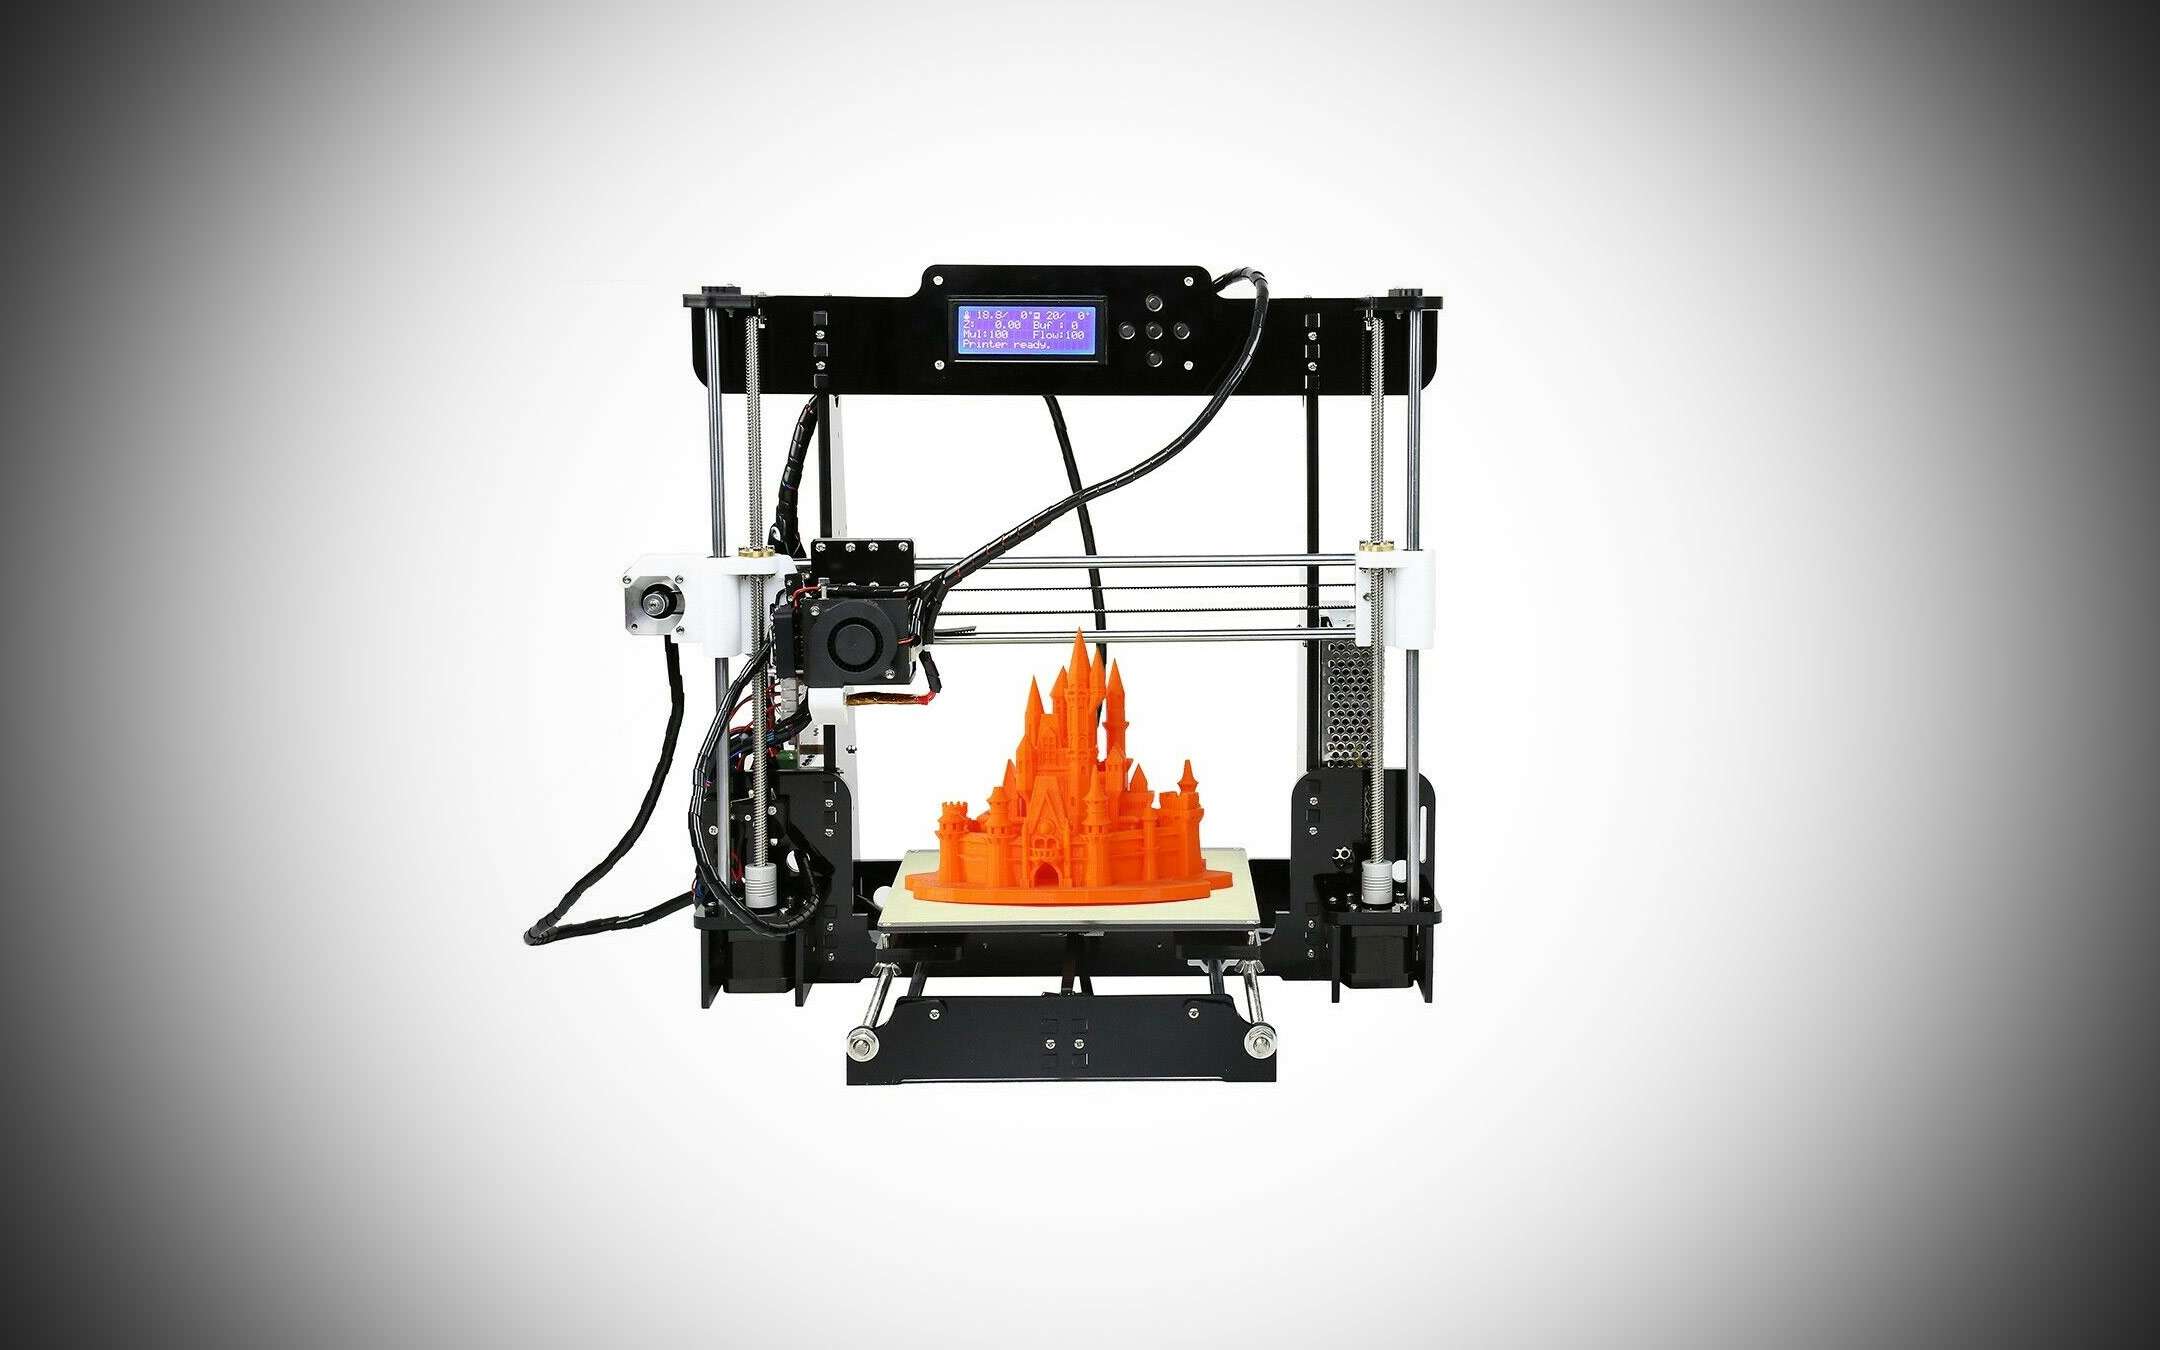 Offerte eBay: una stampante 3D a 94,99 euro